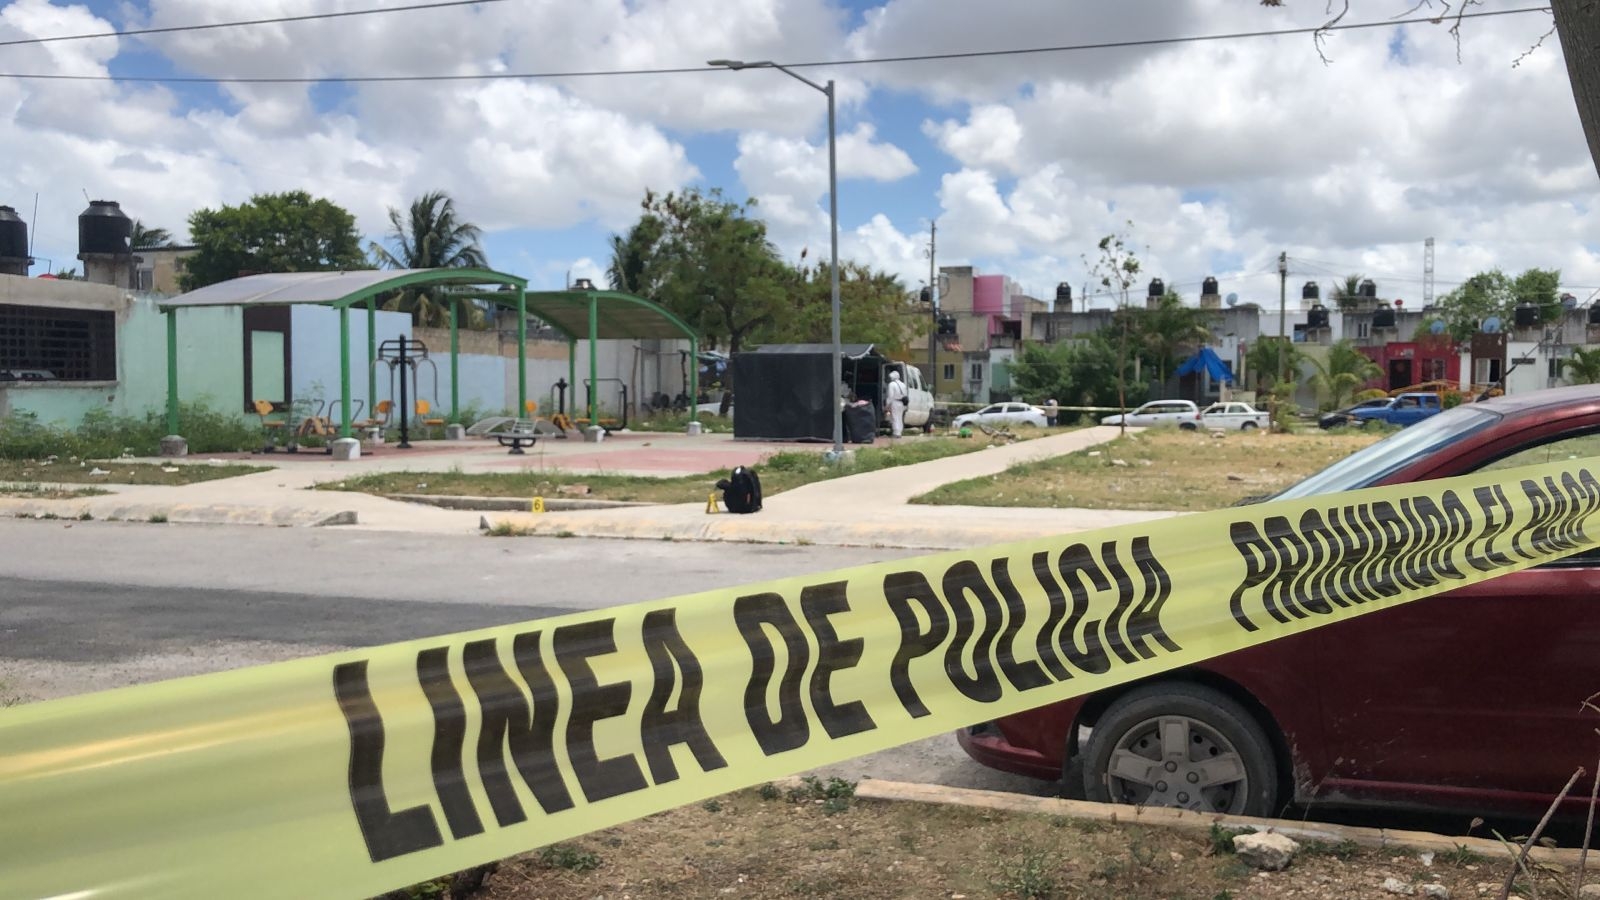 La menor baleada fue llevada de urgencia al Hospital General de Cancún para su atención médica, mientras la Policía investiga el hecho